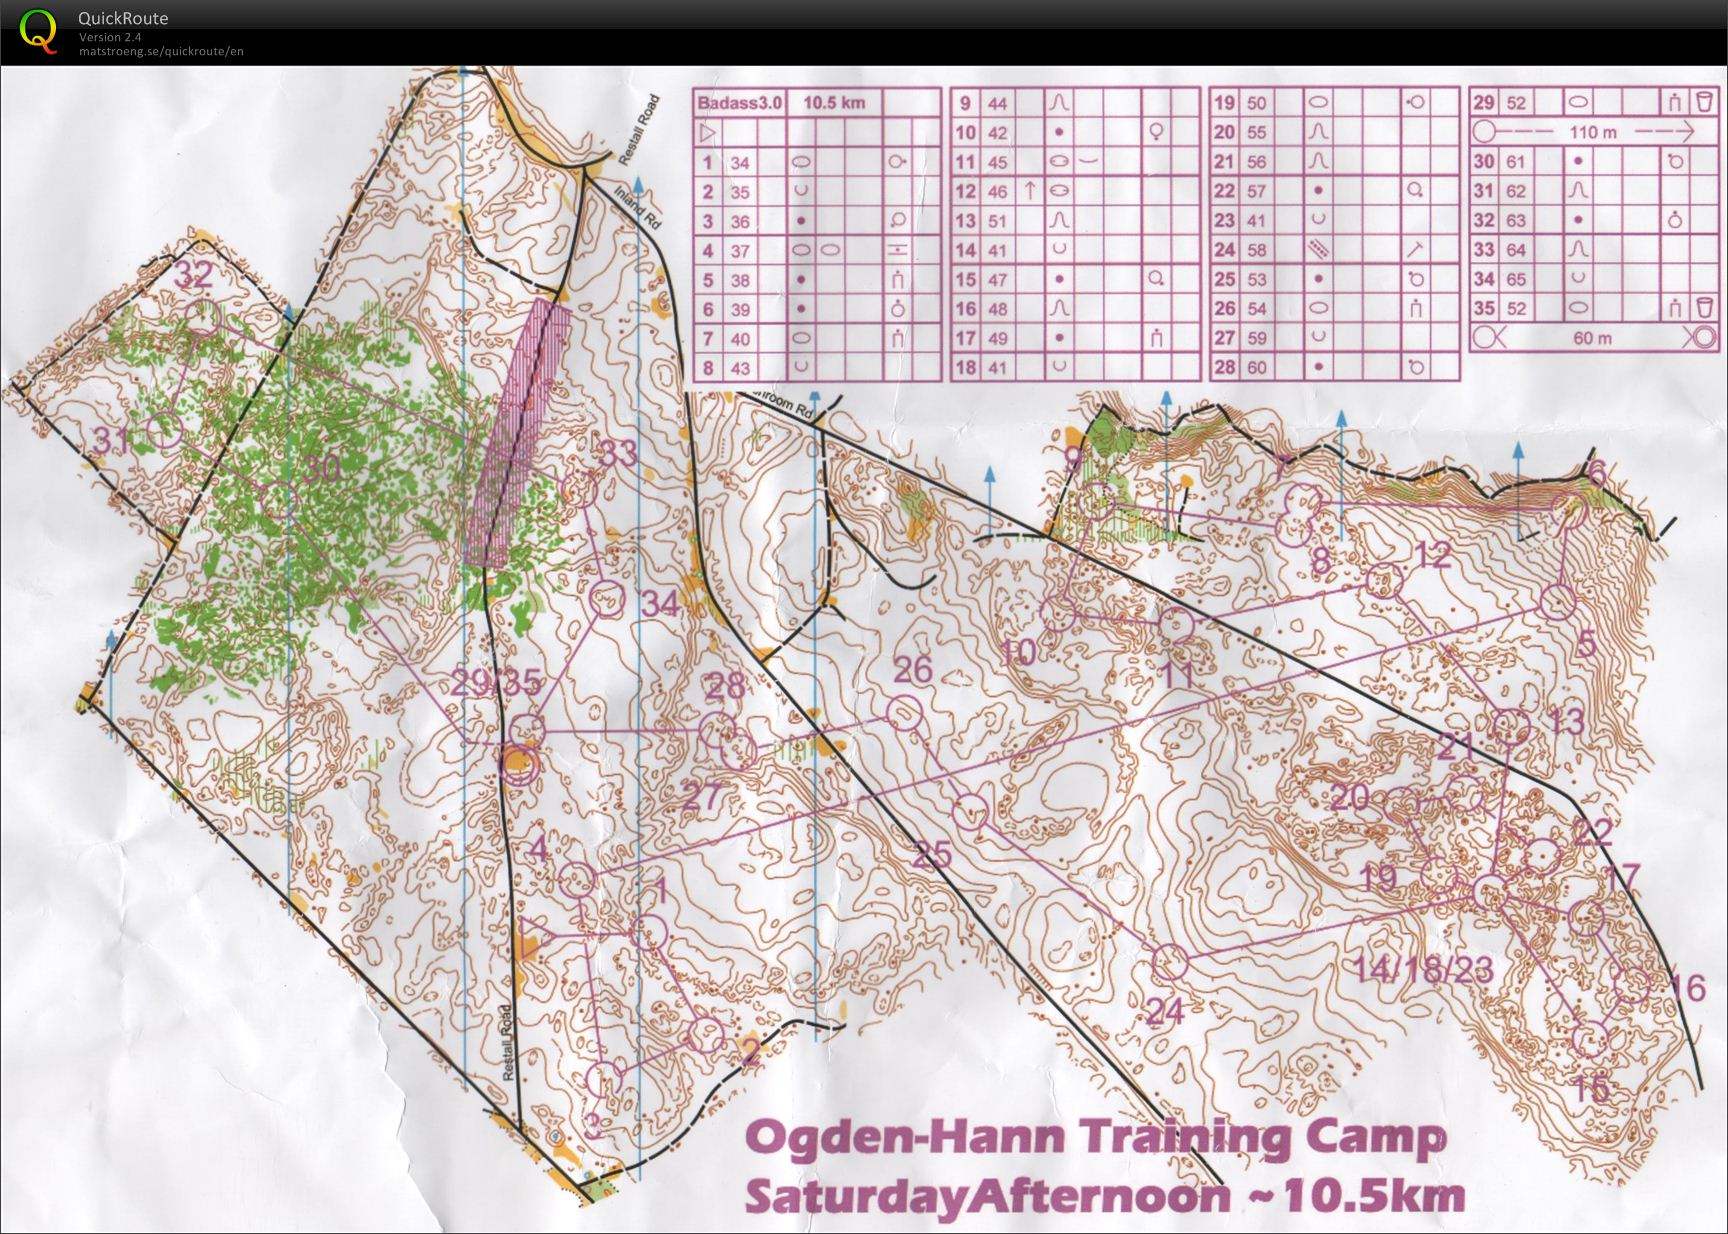 Ogden-Hann Training Camp - Badass 3.0 (16.03.2012)